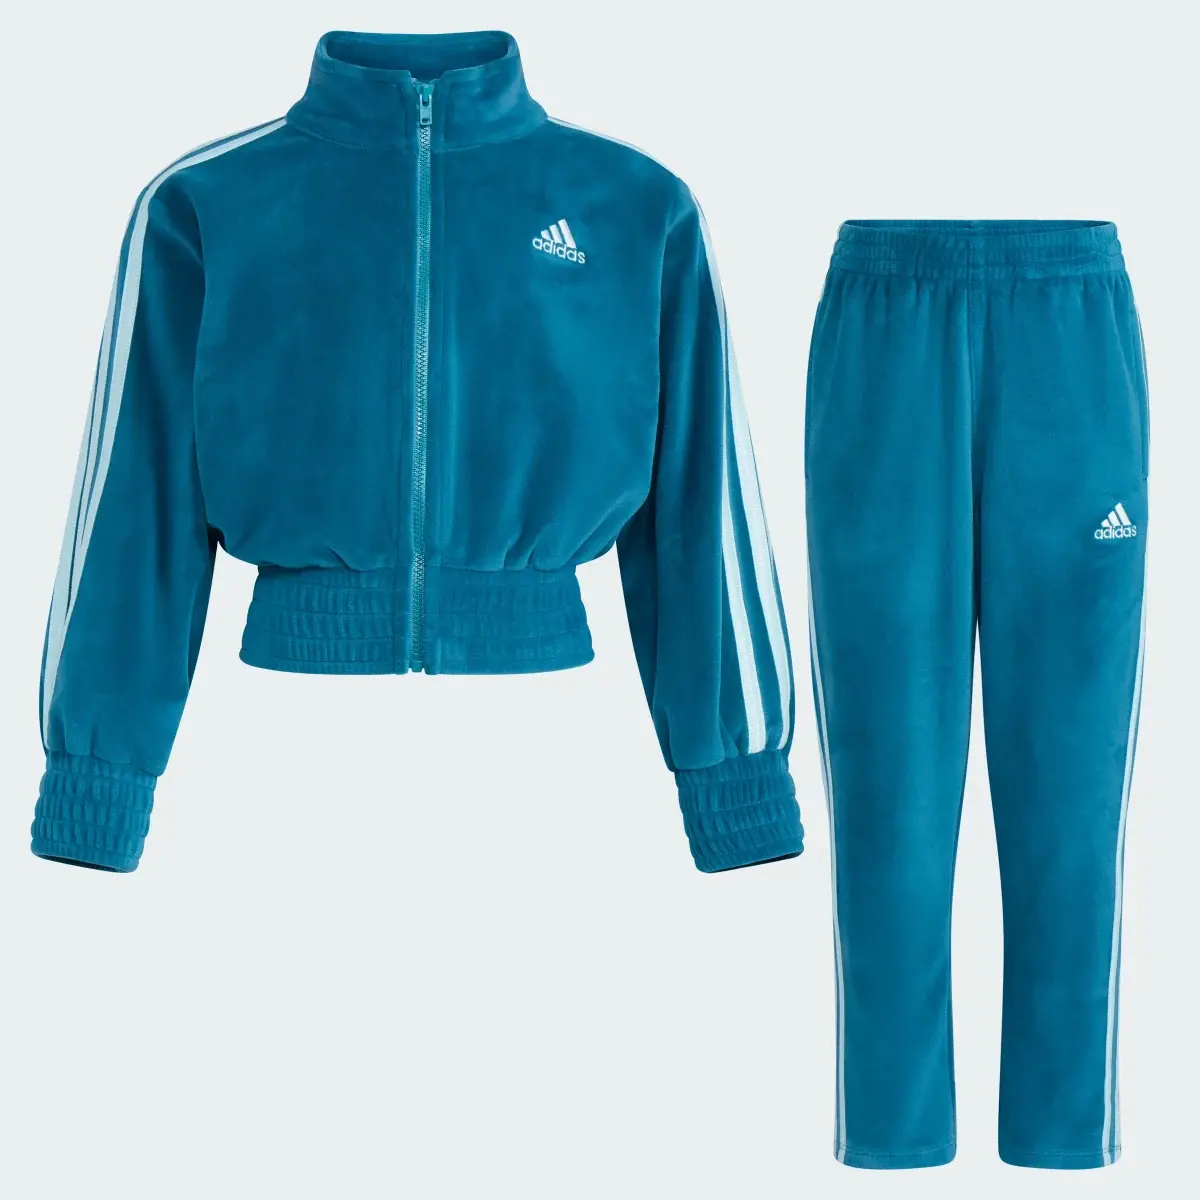 Adidas Two-Piece Fashion Velour Jacket Set. 3